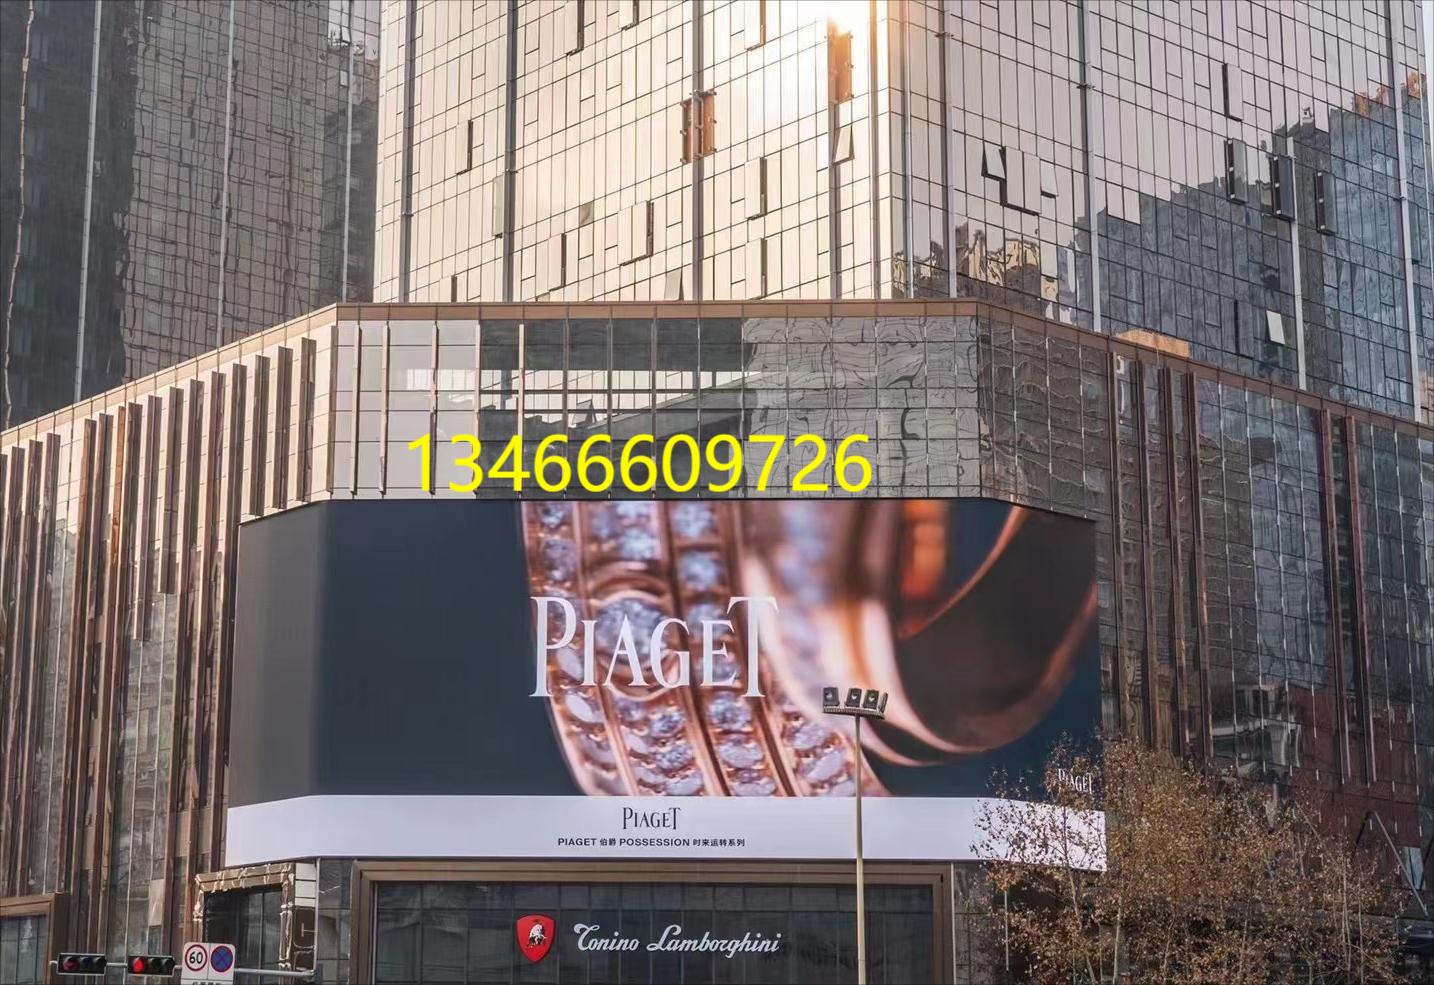 成都蘭博基尼中心裸眼3d大屏廣告